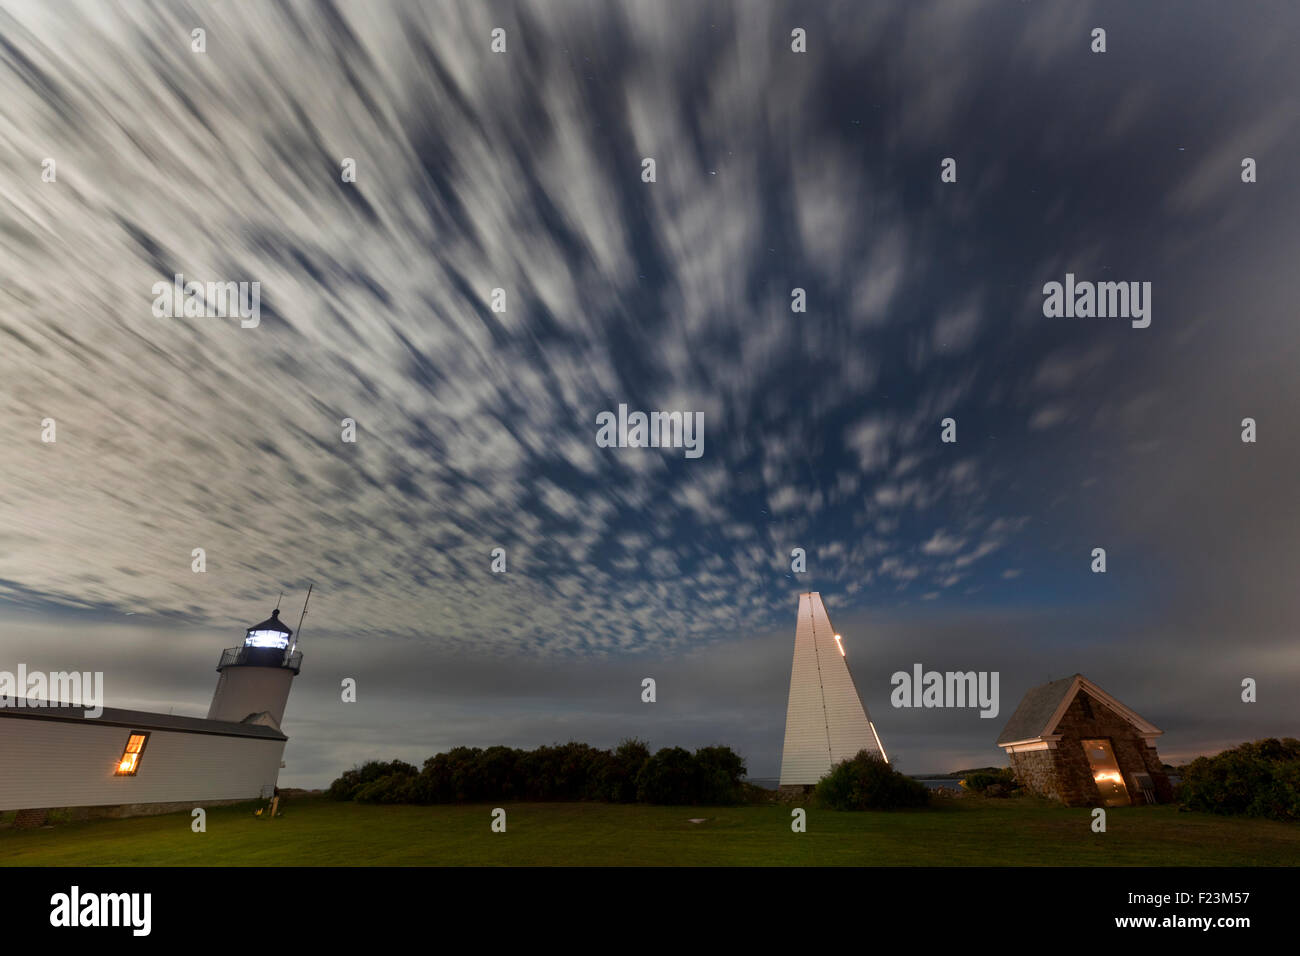 Une longue exposition photo de Goat Island Lighthouse et clocher de nuages se déplaçant dans le ciel Banque D'Images